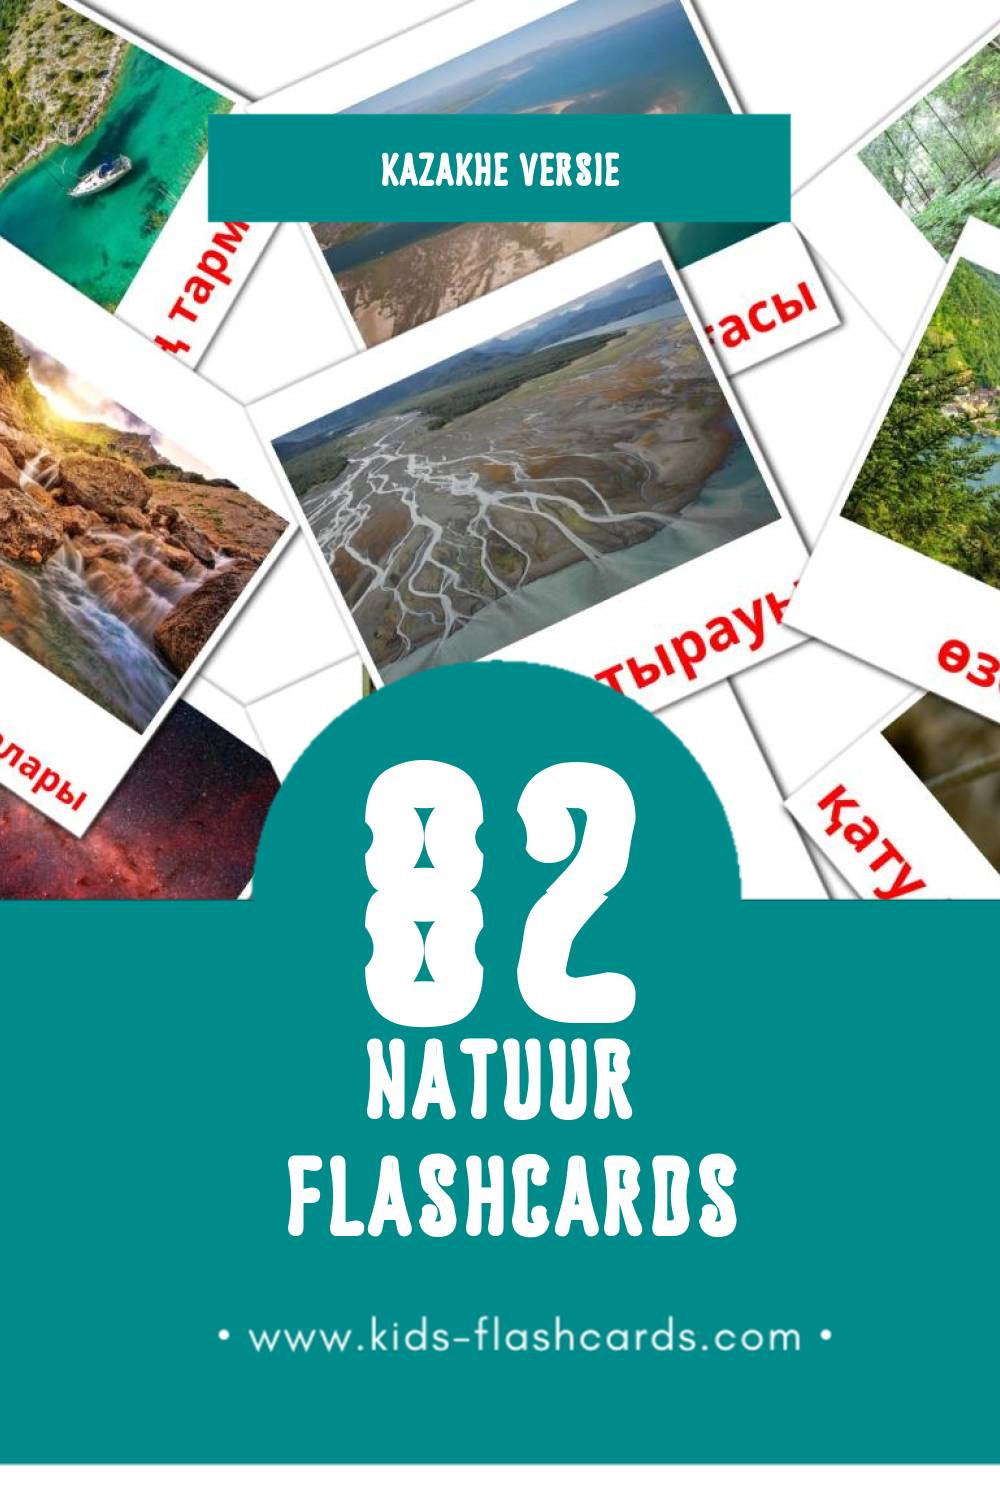 Visuele Табиғат Flashcards voor Kleuters (82 kaarten in het Kazakh)